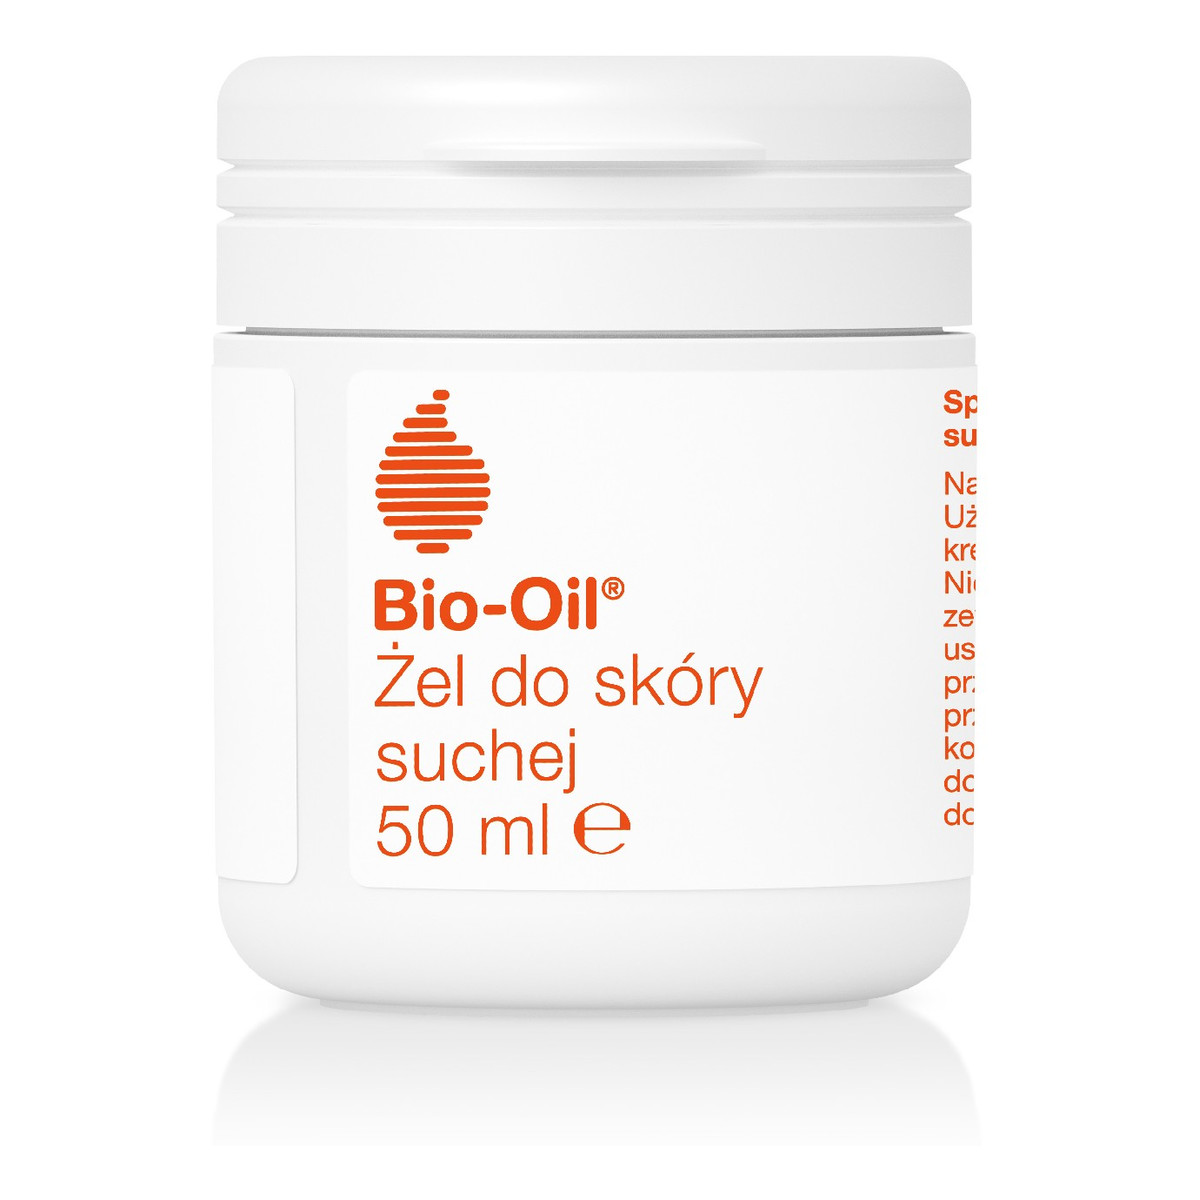 Bio-Oil specjalistyczny żel do skóry suchej niekomedogenny 50ml